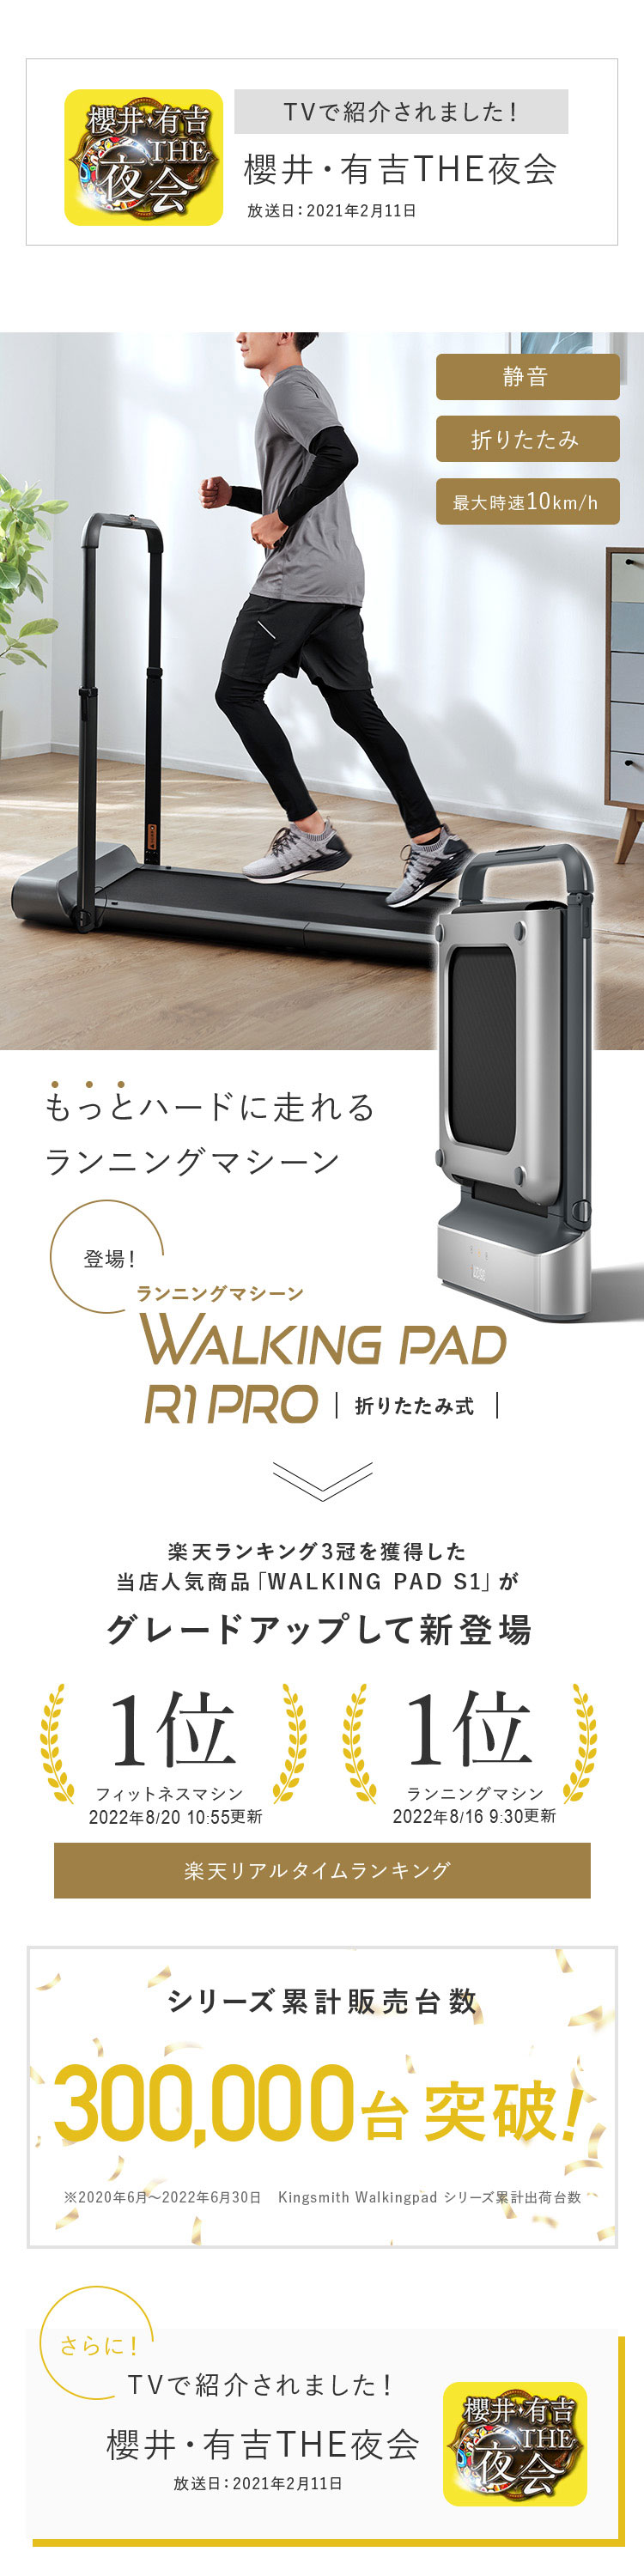 世界の人気ブランド ウォーキングマシン ルームランナー ランニングマシン コンパクト 折りたたみ Walkingpad 静音 ダイエット R1pro  公式販売店 ダイエット器具